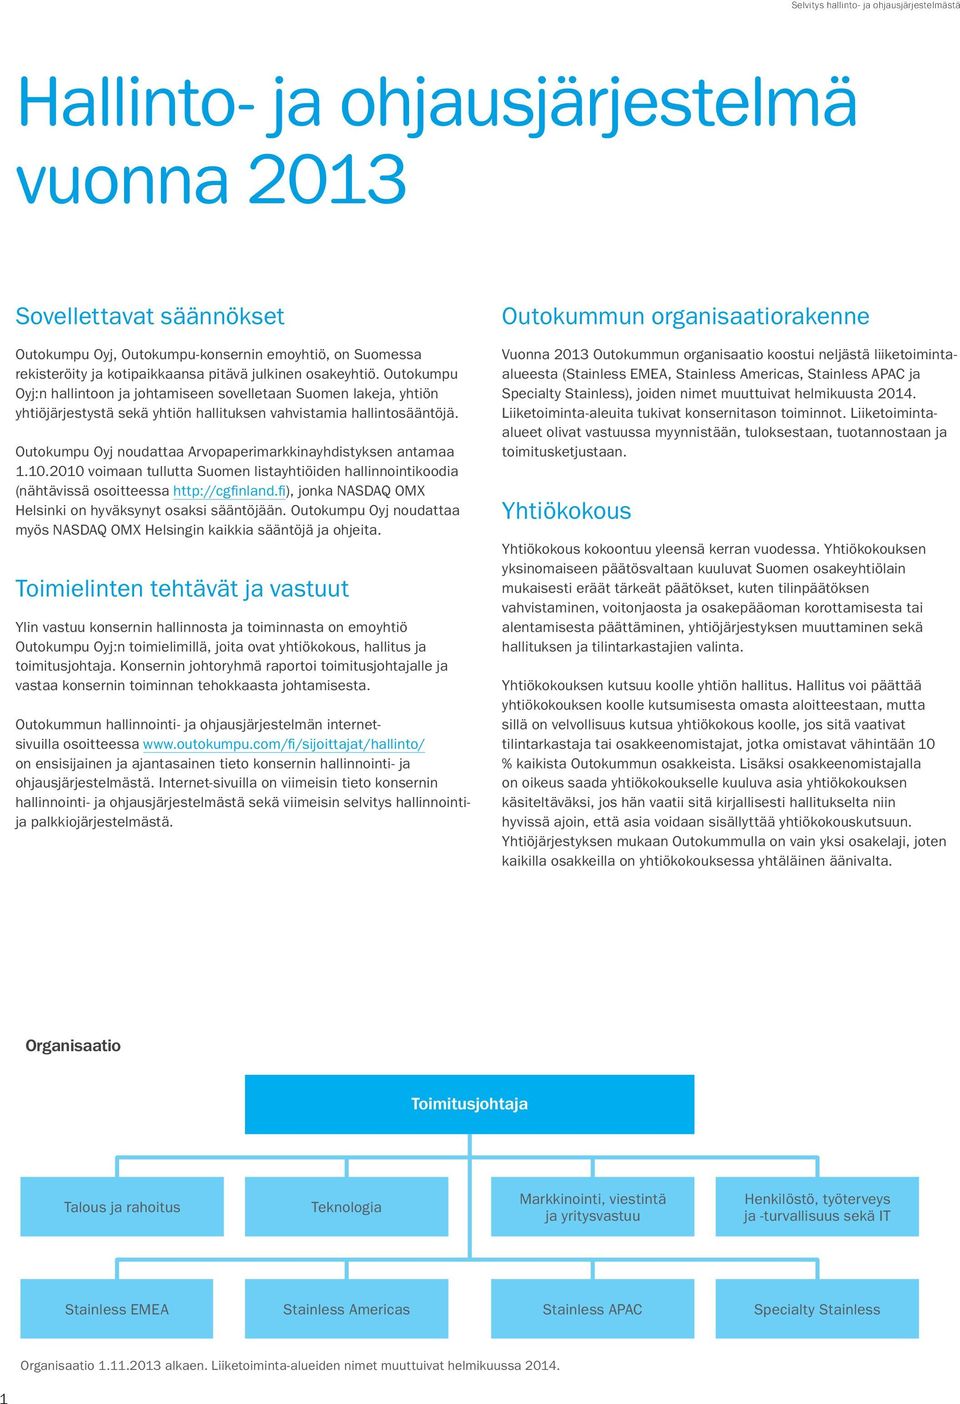 Outokumpu Oyj noudattaa Arvopaperimarkkinayhdistyksen antamaa 1.10.2010 voimaan tullutta Suomen listayhtiöiden hallinnointikoodia (nähtävissä osoitteessa http://cgfinland.